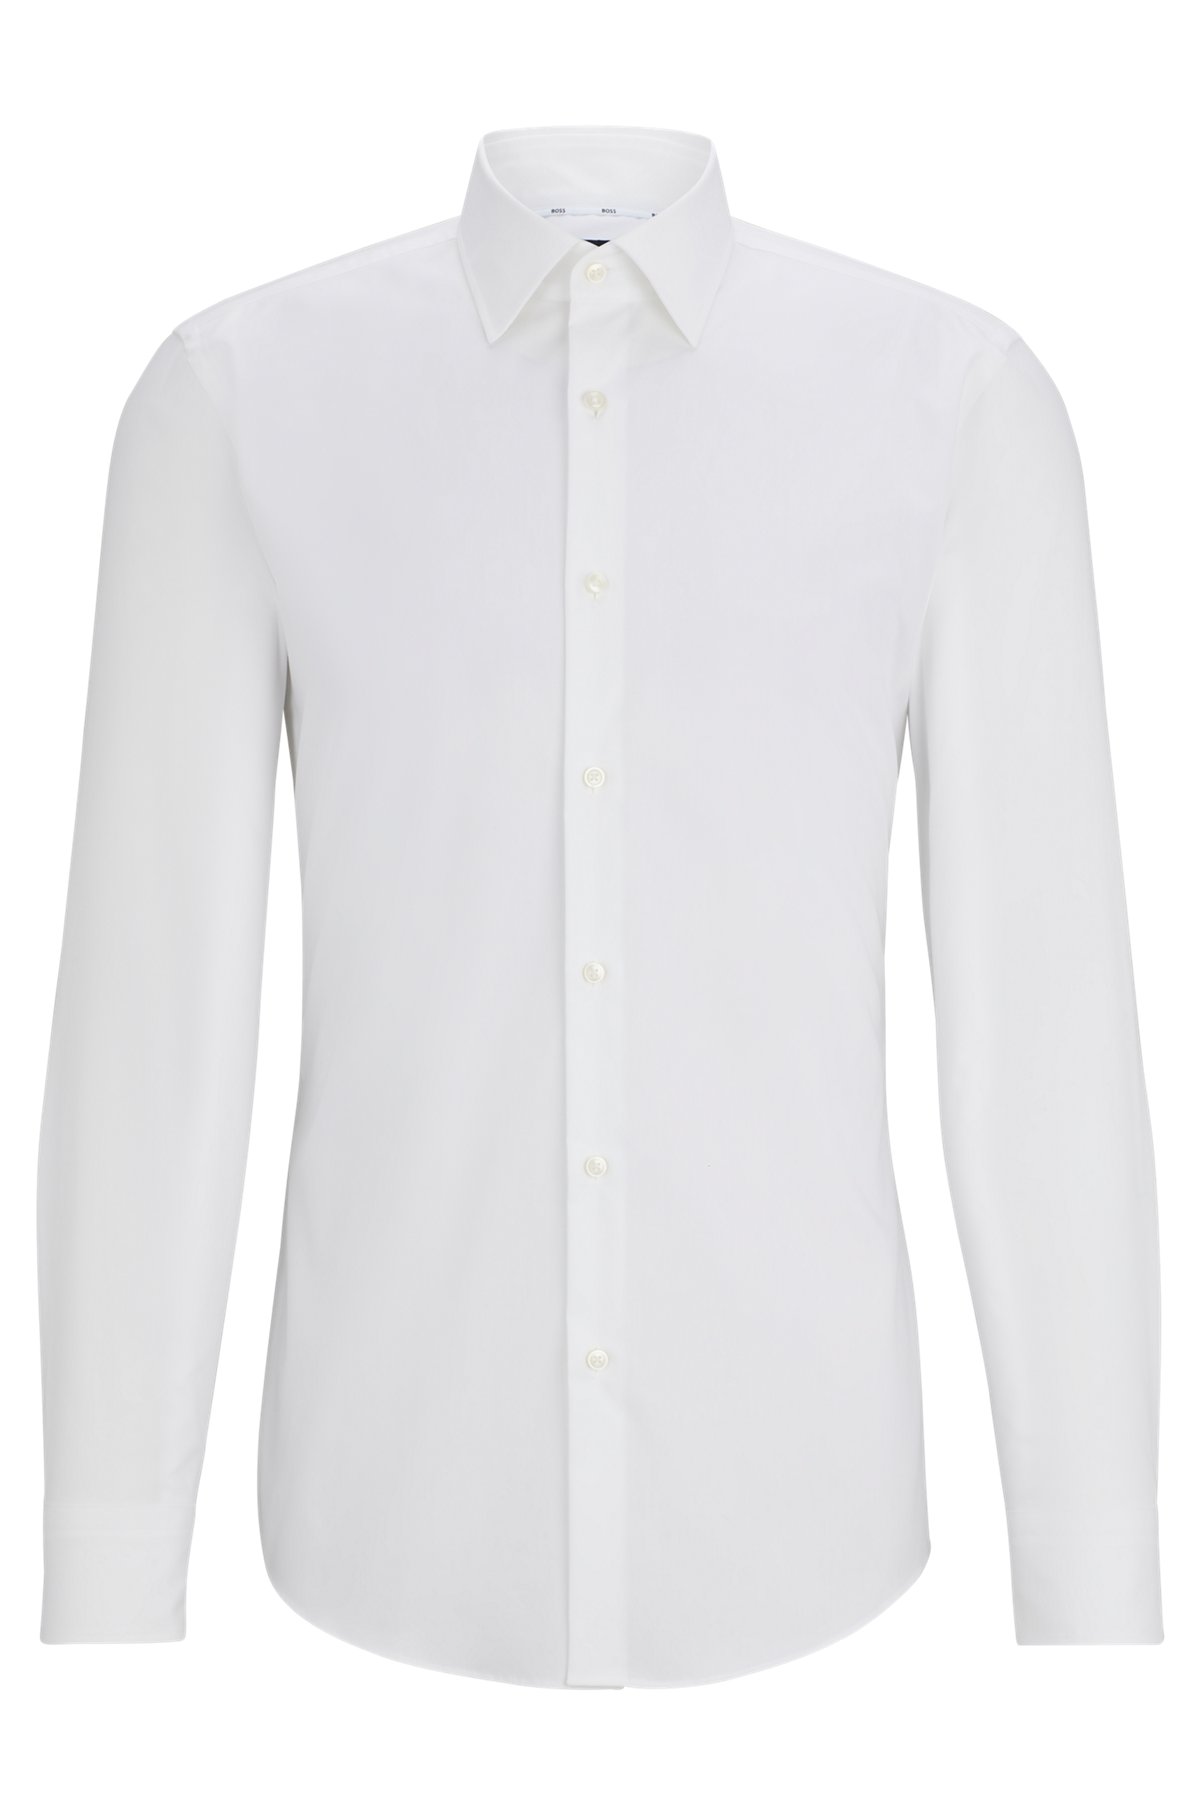 Camicia slim fit in popeline di cotone elasticizzato facile da stirare, Bianco